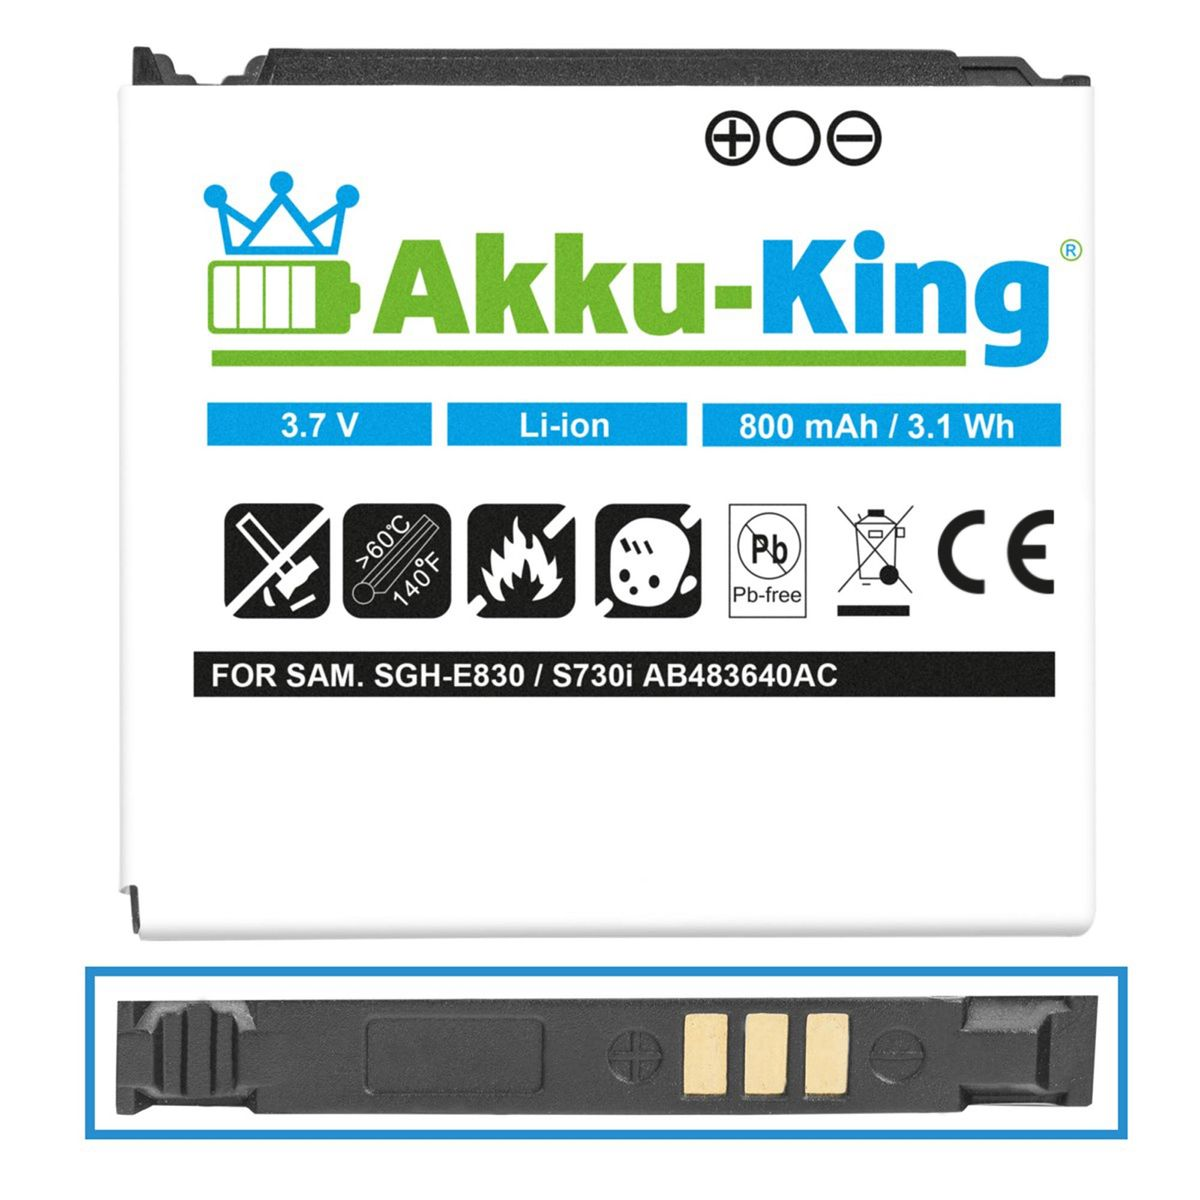 kompatibel AB483640AC Li-Ion Akku Volt, mit 800mAh Samsung 3.7 AKKU-KING Handy-Akku,